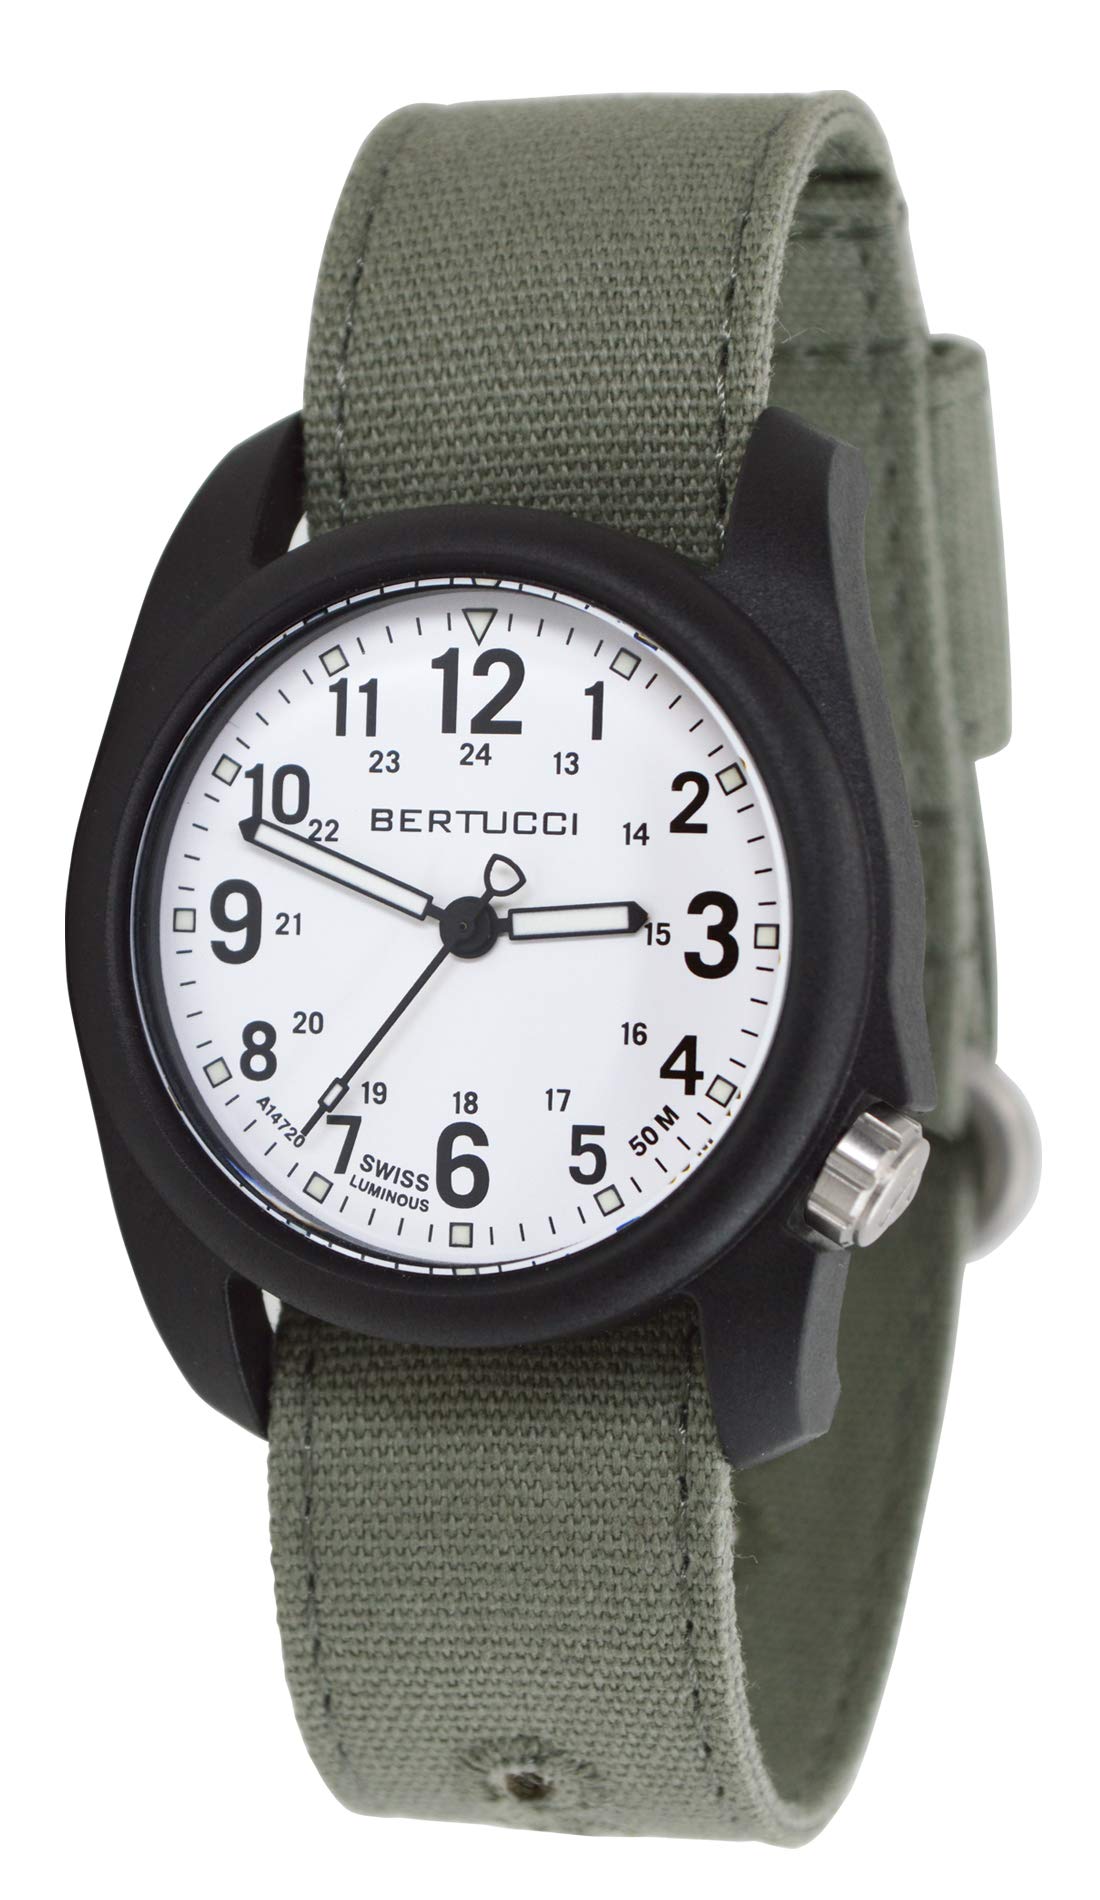 Bertucci DX3 Men’s Field Watch | Spruce Comfort Canvas Band | Swiss Super Luminous Technology | Innovative Design, Durable Build, Light Weight Comfort | 11090